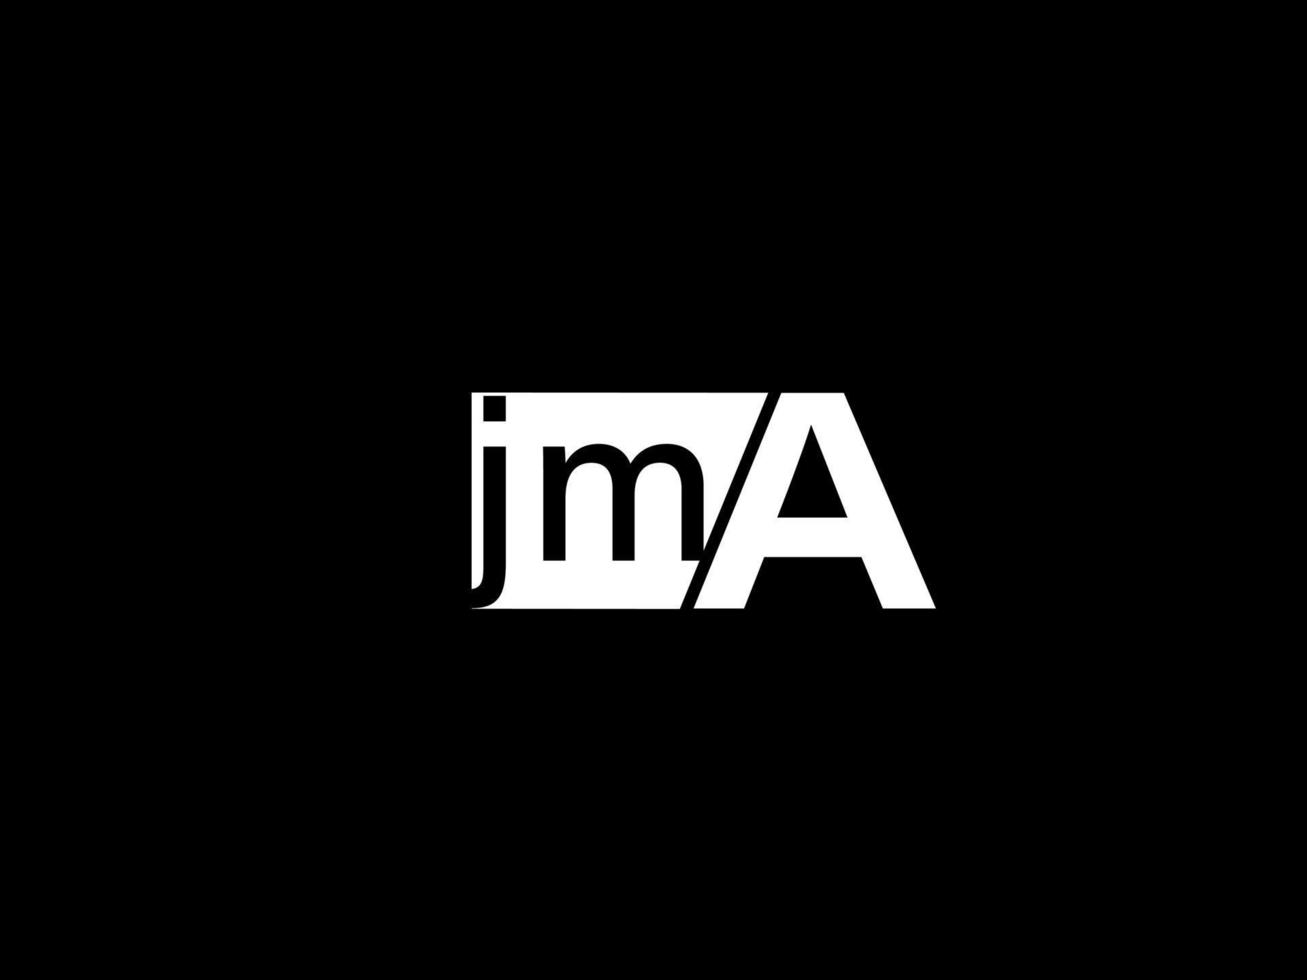 JMA-Logo und Grafikdesign Vektorgrafiken, Symbole isoliert auf schwarzem Hintergrund vektor